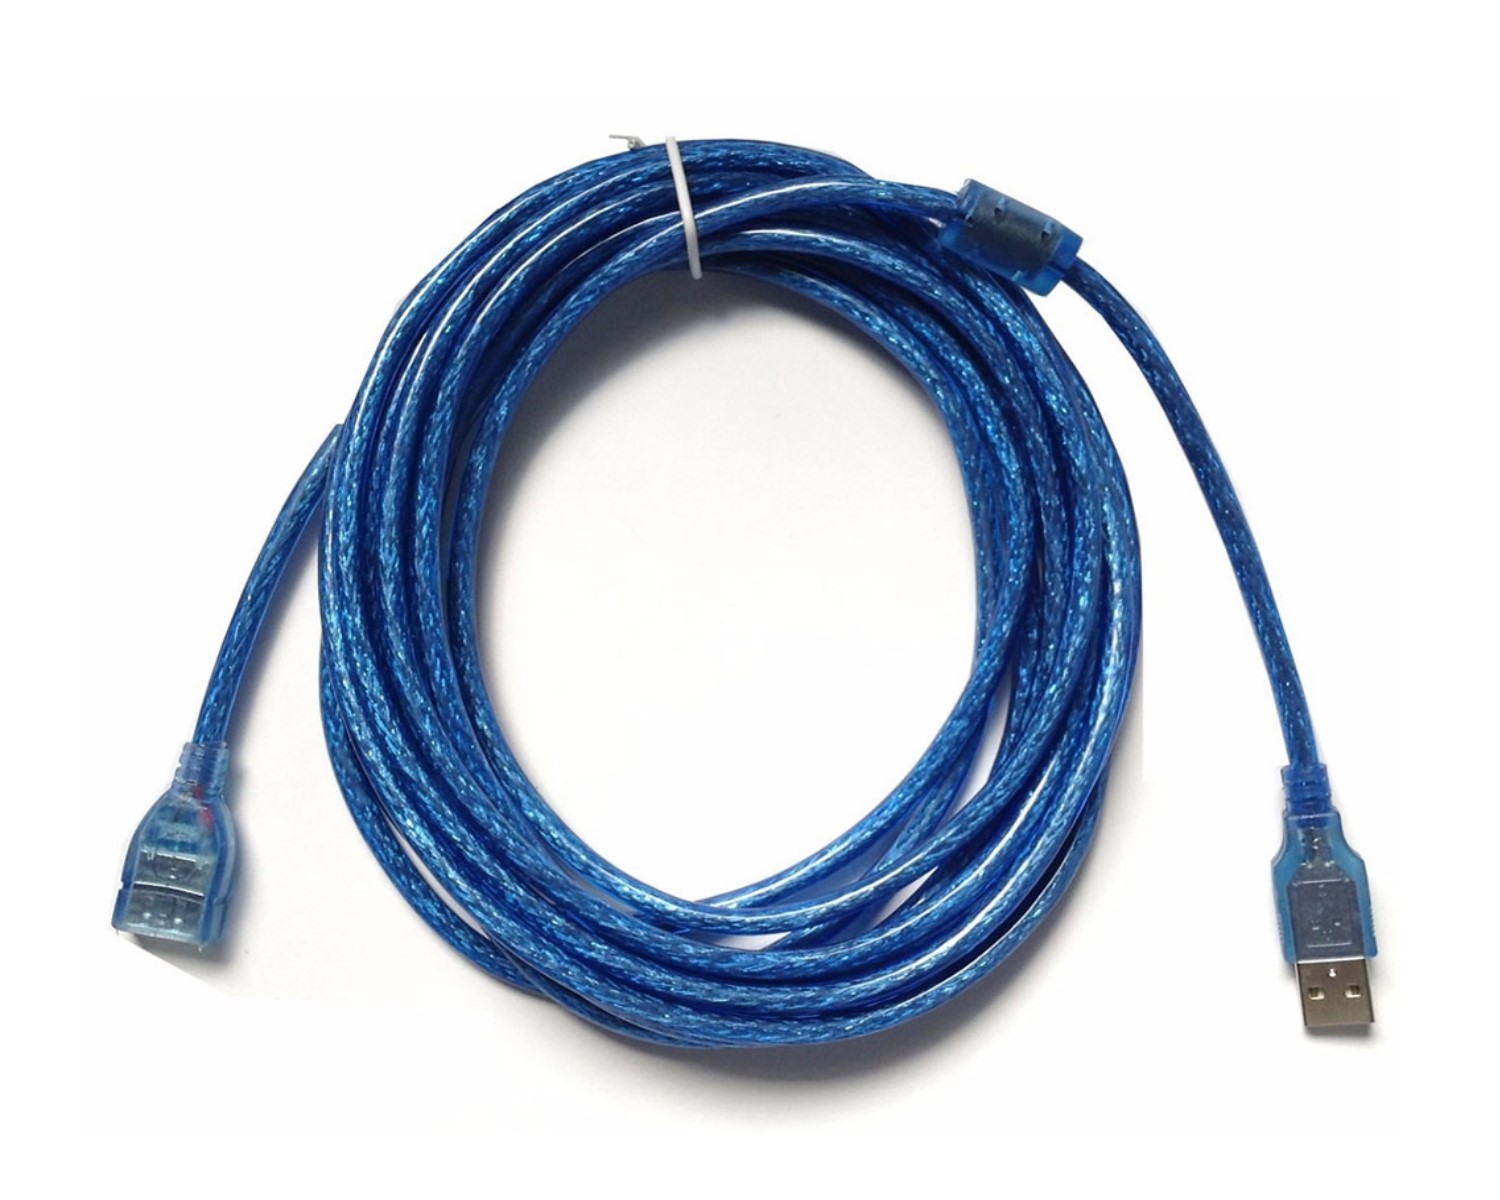 Cable Extensión de calidad Usb Macho Hembra de 5.0 metros - Impormel